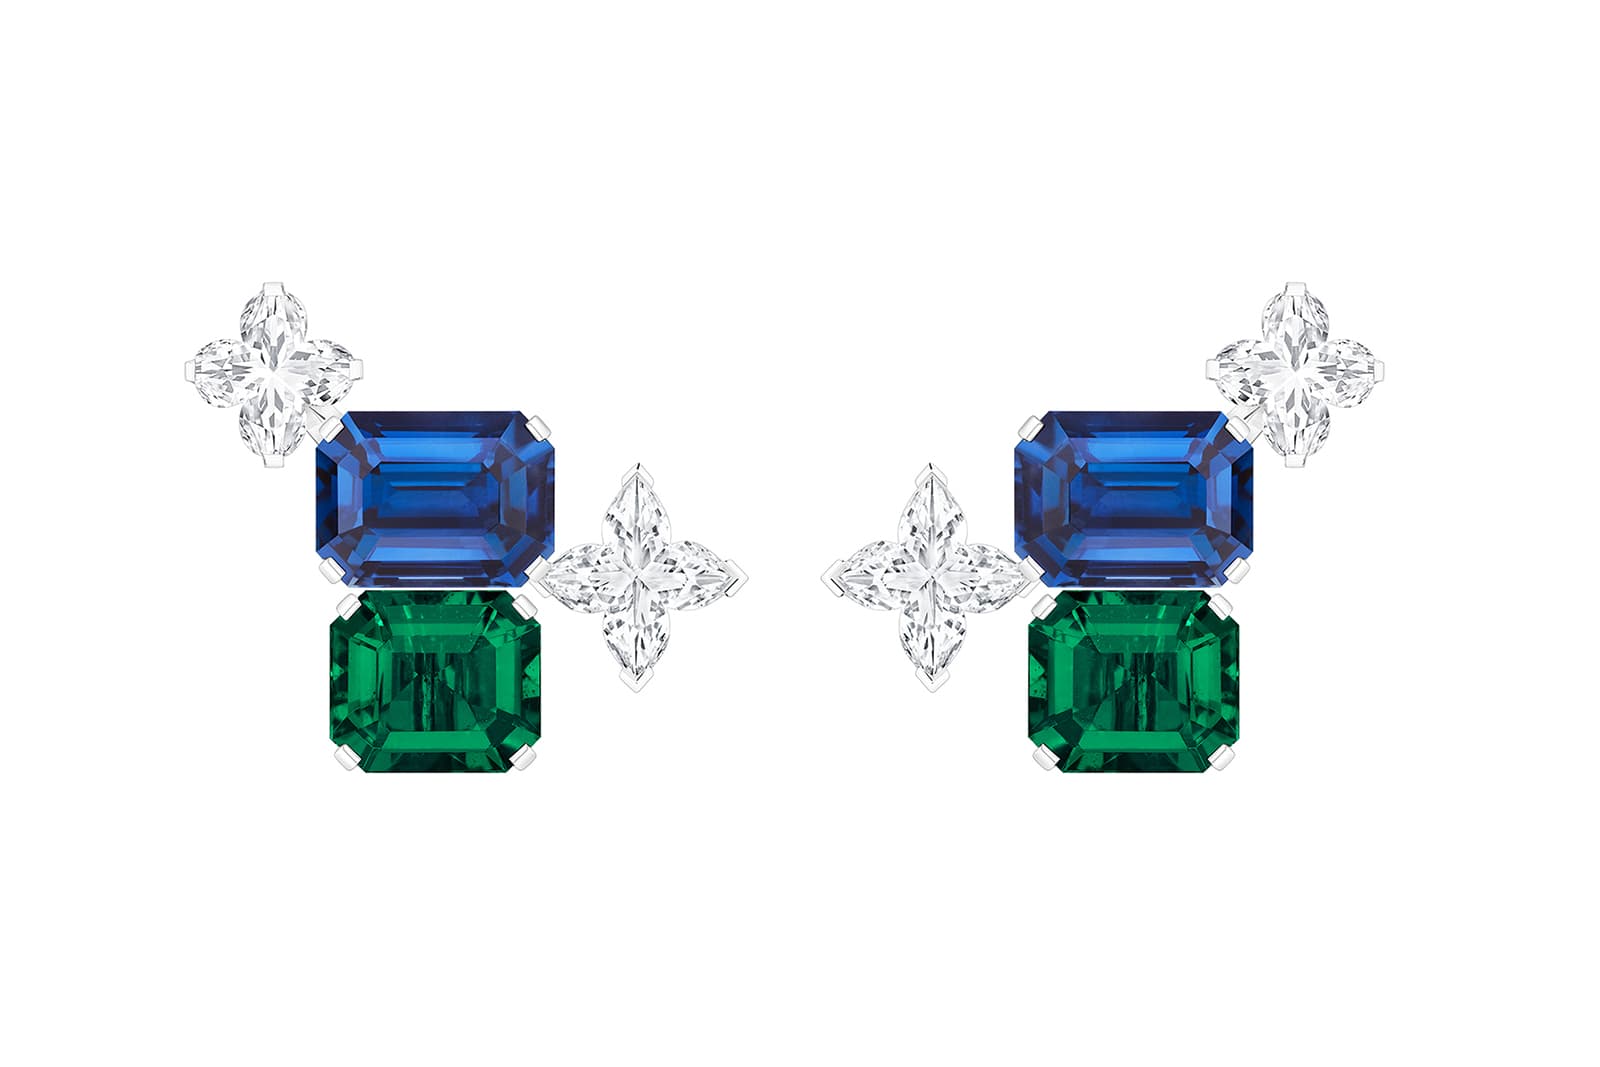 Louis Vuitton Stellar Times Planète Bleue emerald, sapphire and diamond  necklace